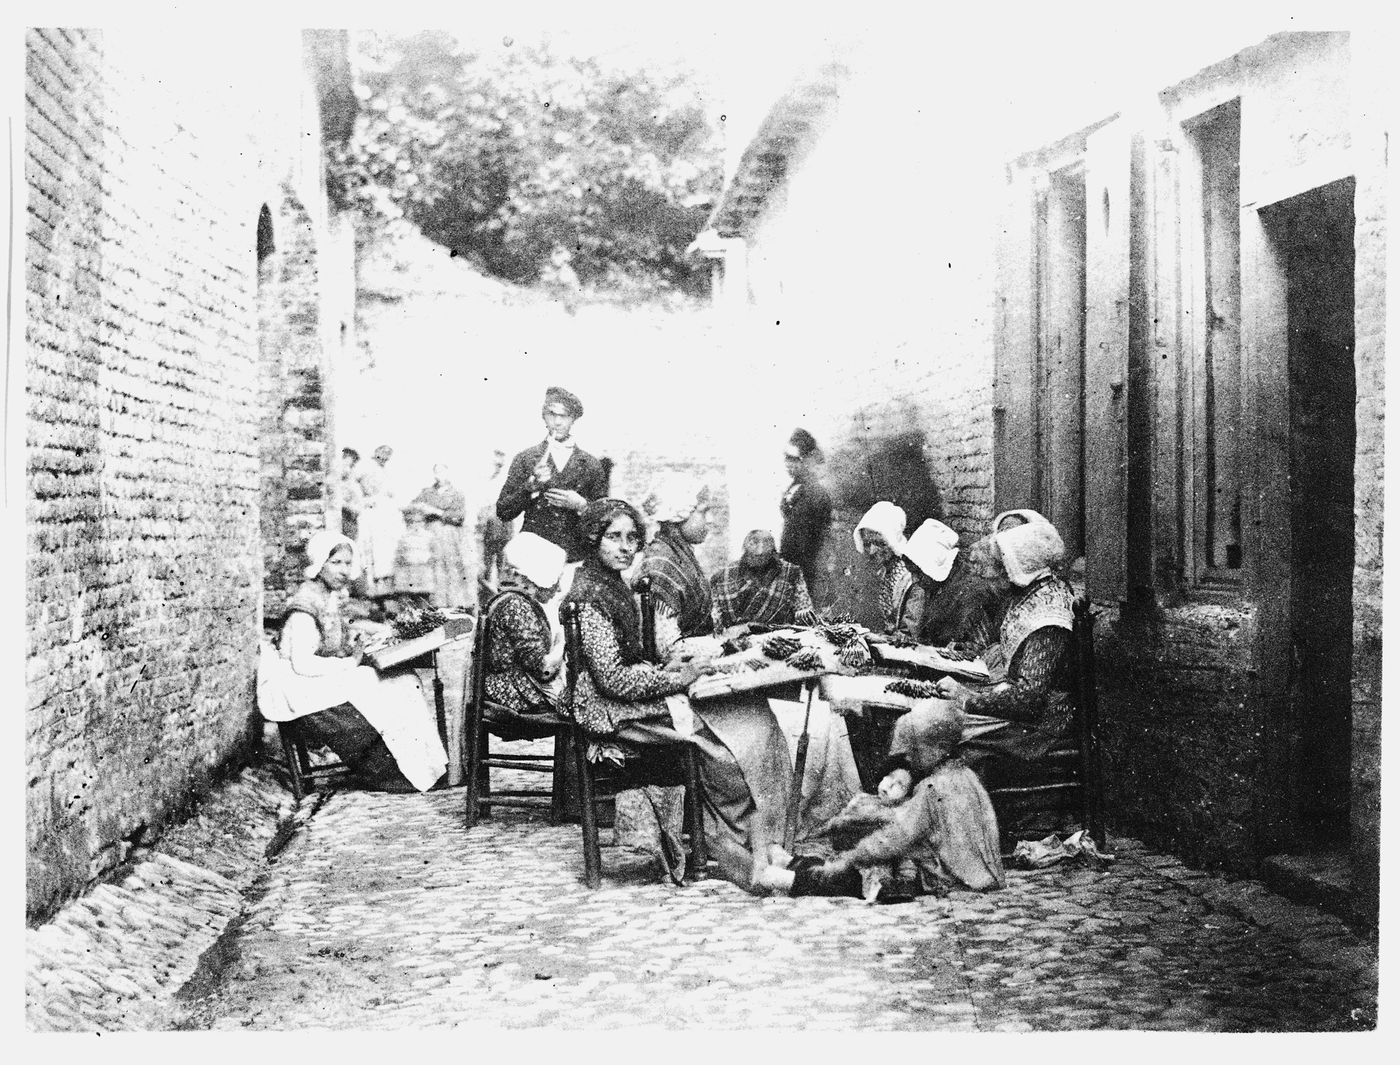 Women making lace in alley between two brick buildings, Flanders, Belgium